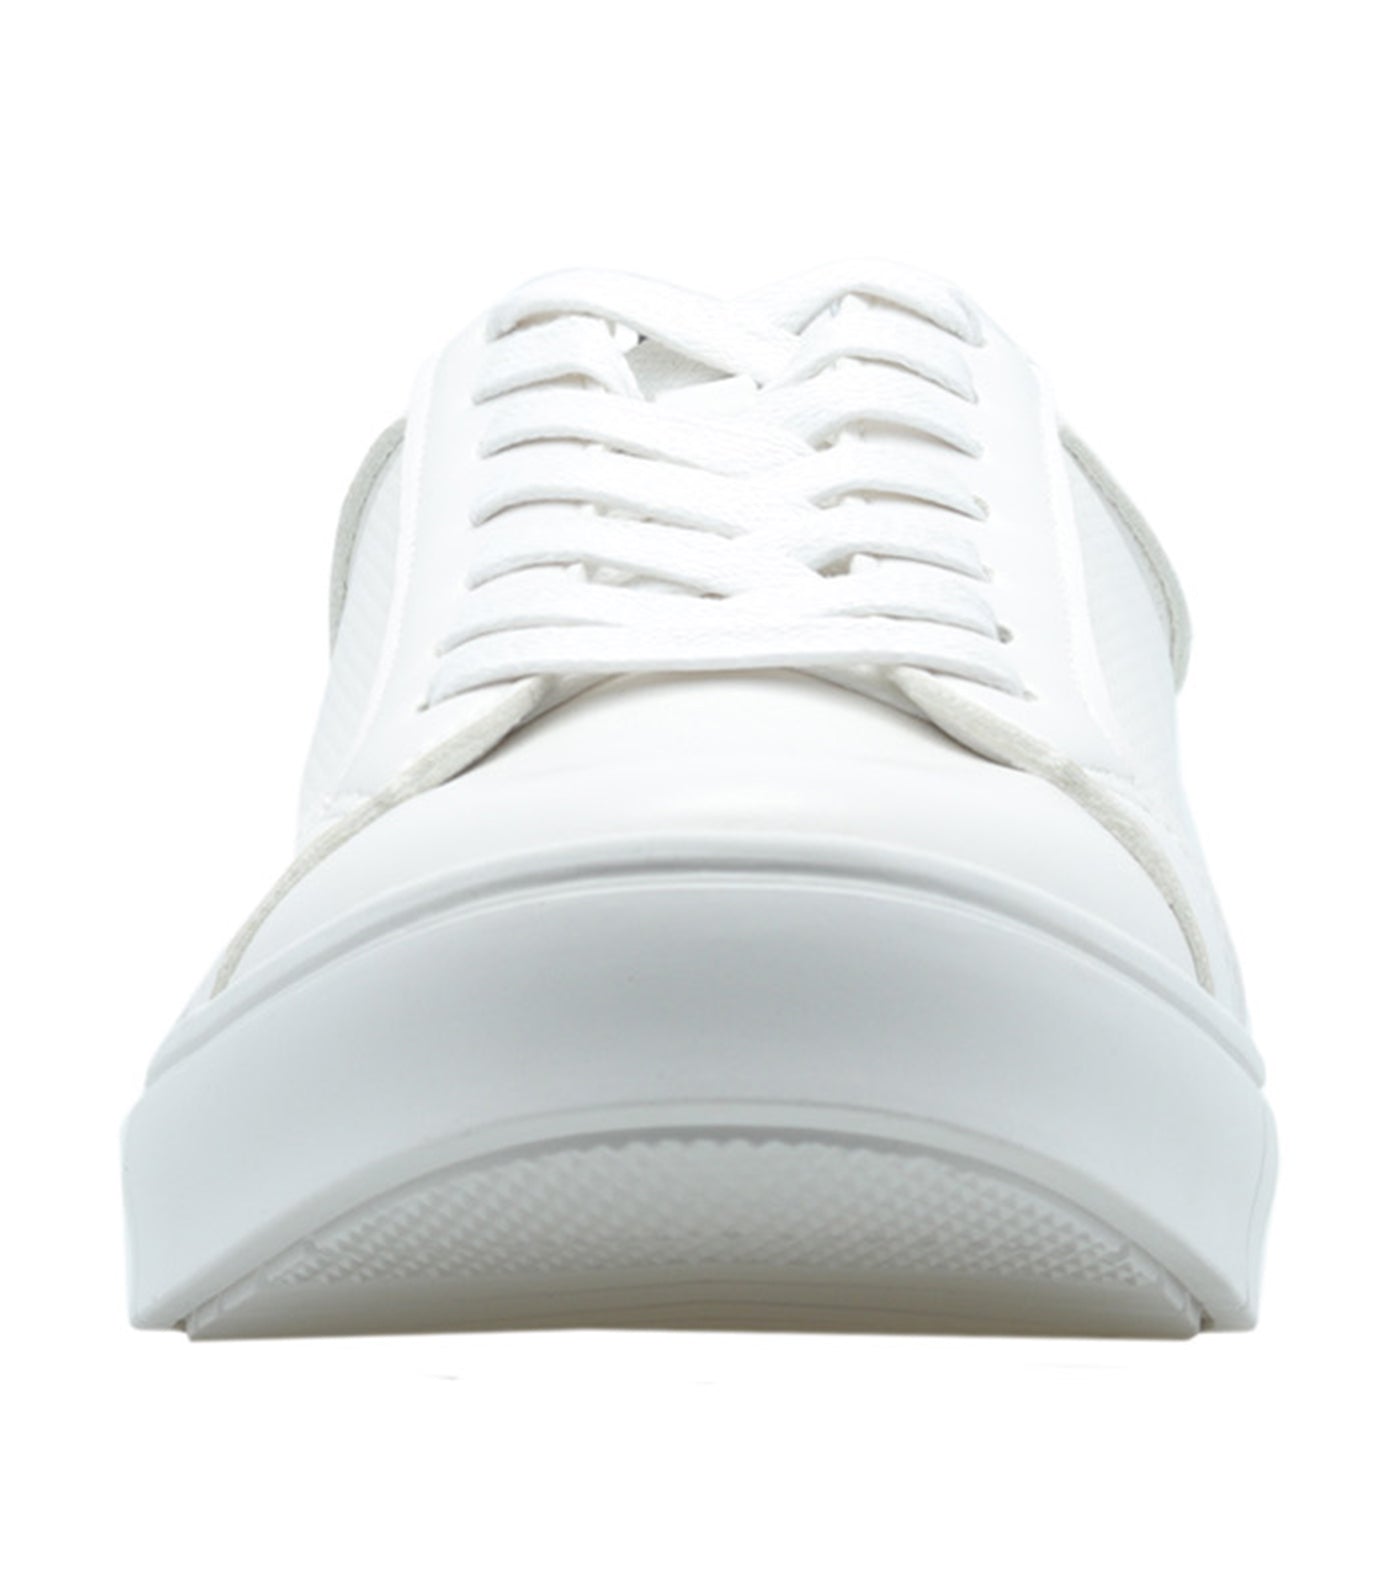 Reid Lace Up Sneaker White